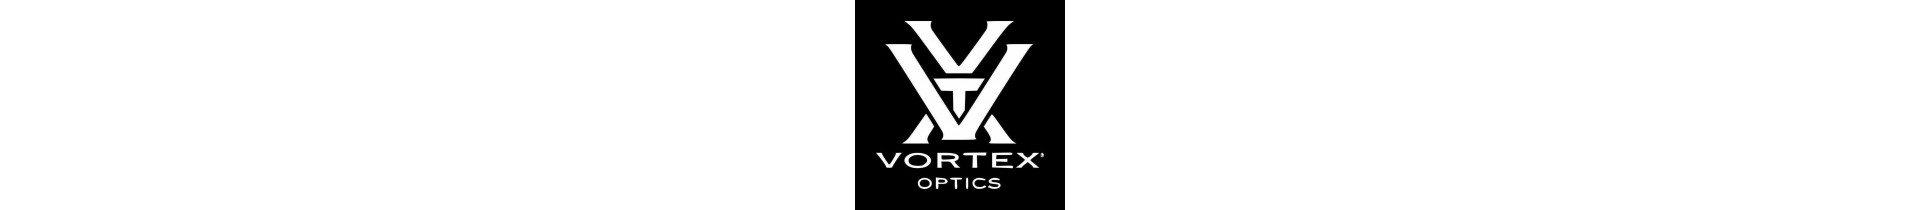 Retrouvez sur www.tactirshop.fr toute la gamme des produits Vortex Optics